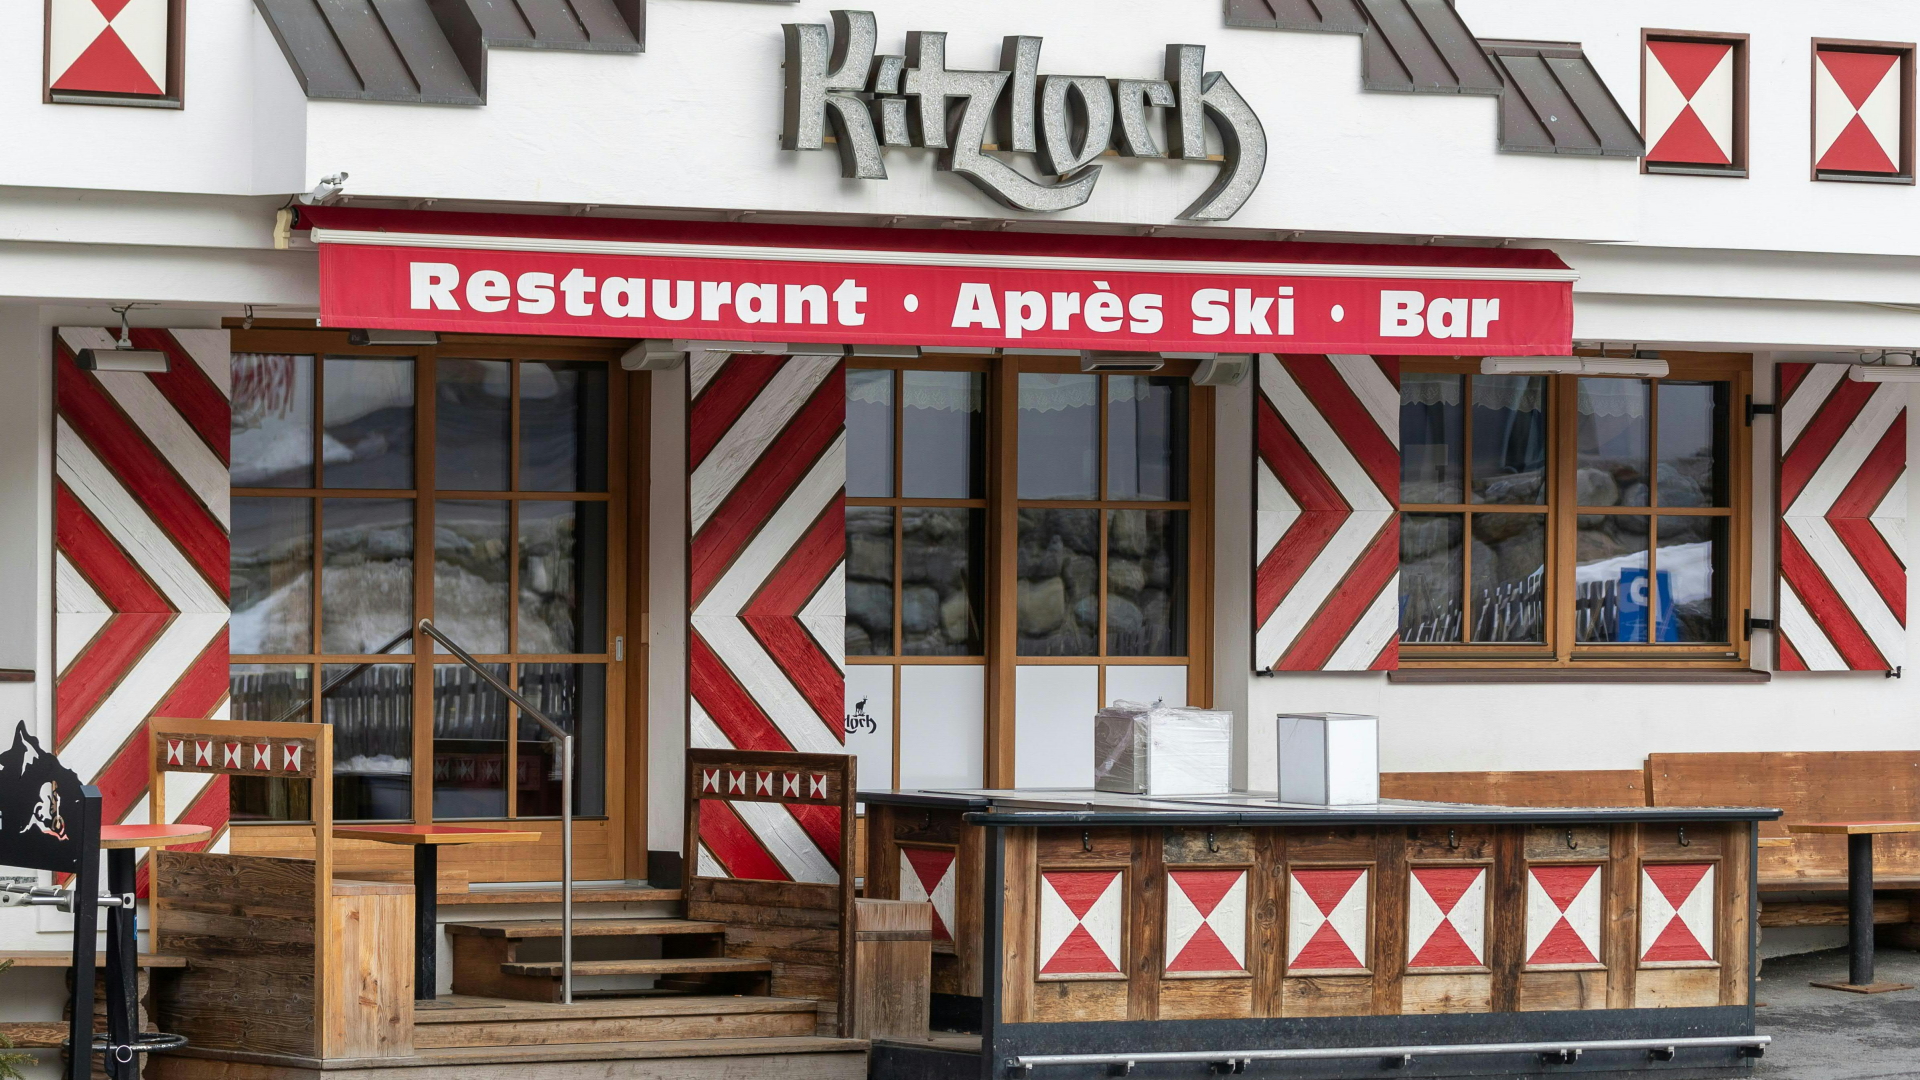 Die Après-Ski-Bar "Kitzloch" im österreichischen Ski-Ort Ischgl | dpa